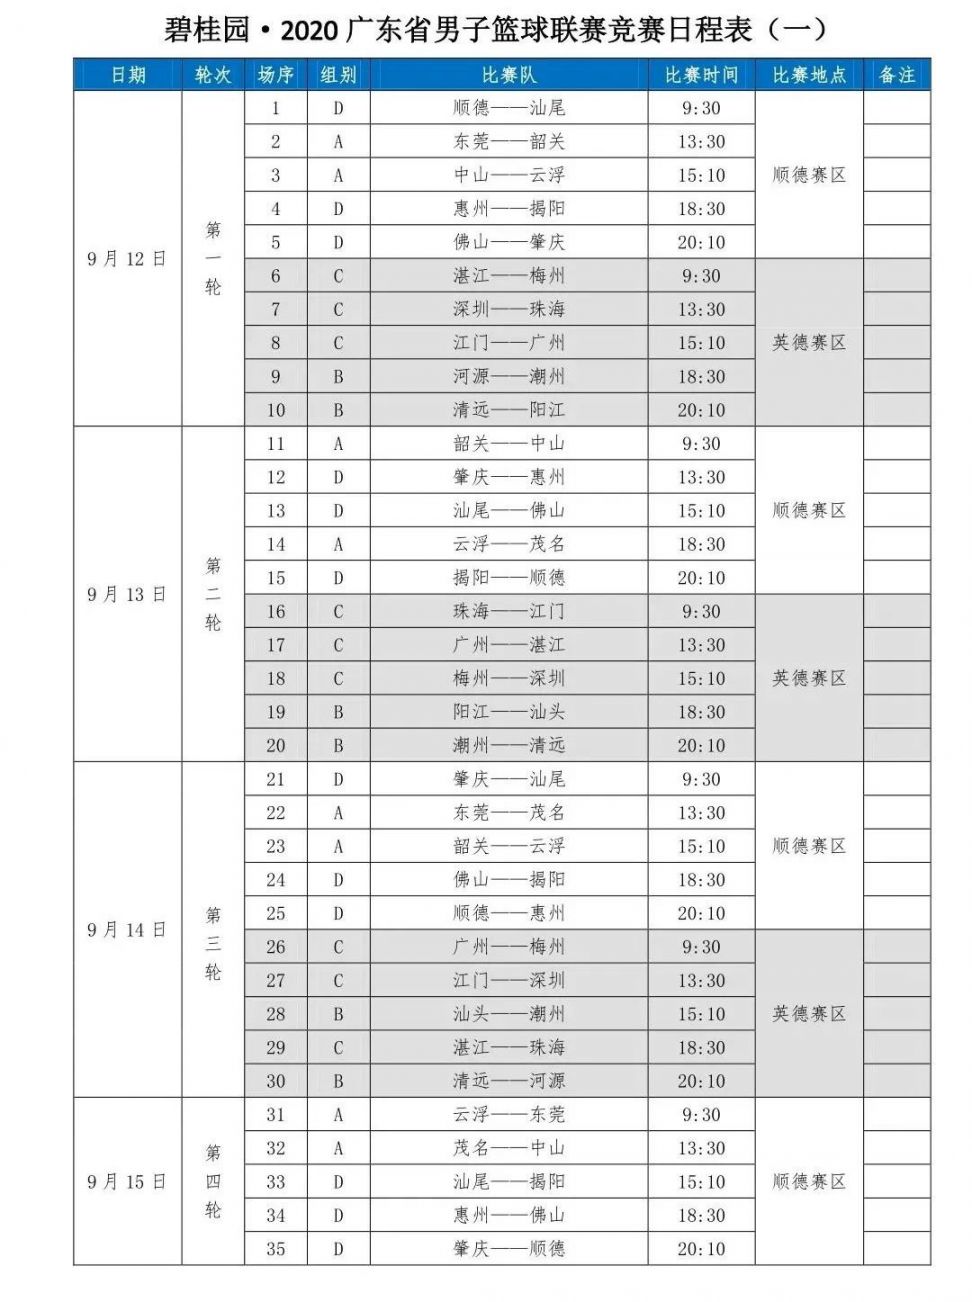 广东男篮第二阶段赛程表_广东男篮对上海男篮_辽宁男篮对阵广东男篮